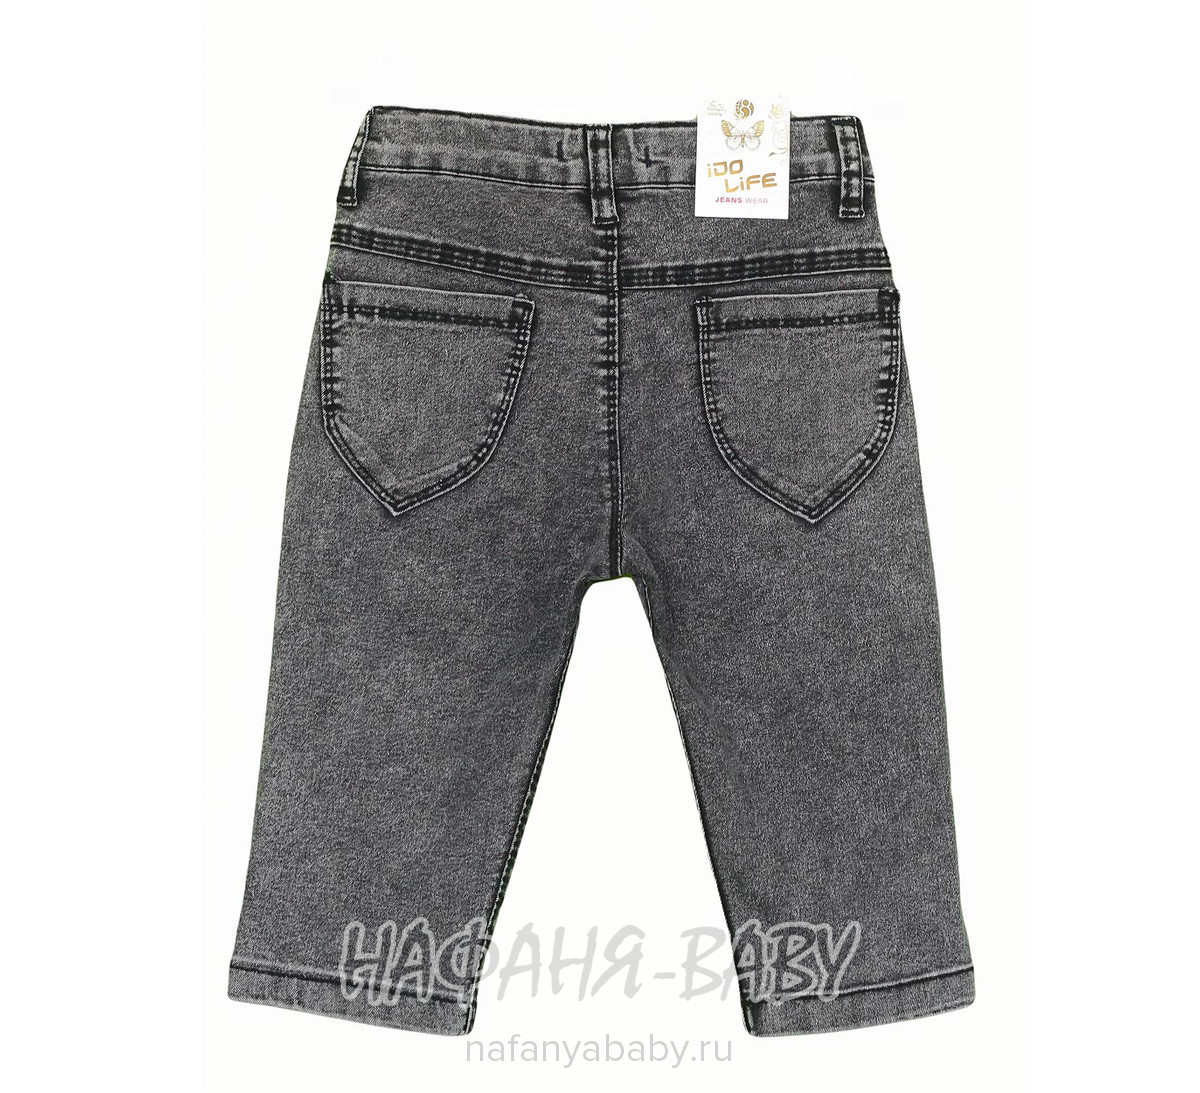 Детские джинсовые шорты IDO LIFE, купить в интернет магазине Нафаня. арт: 867 8-12.